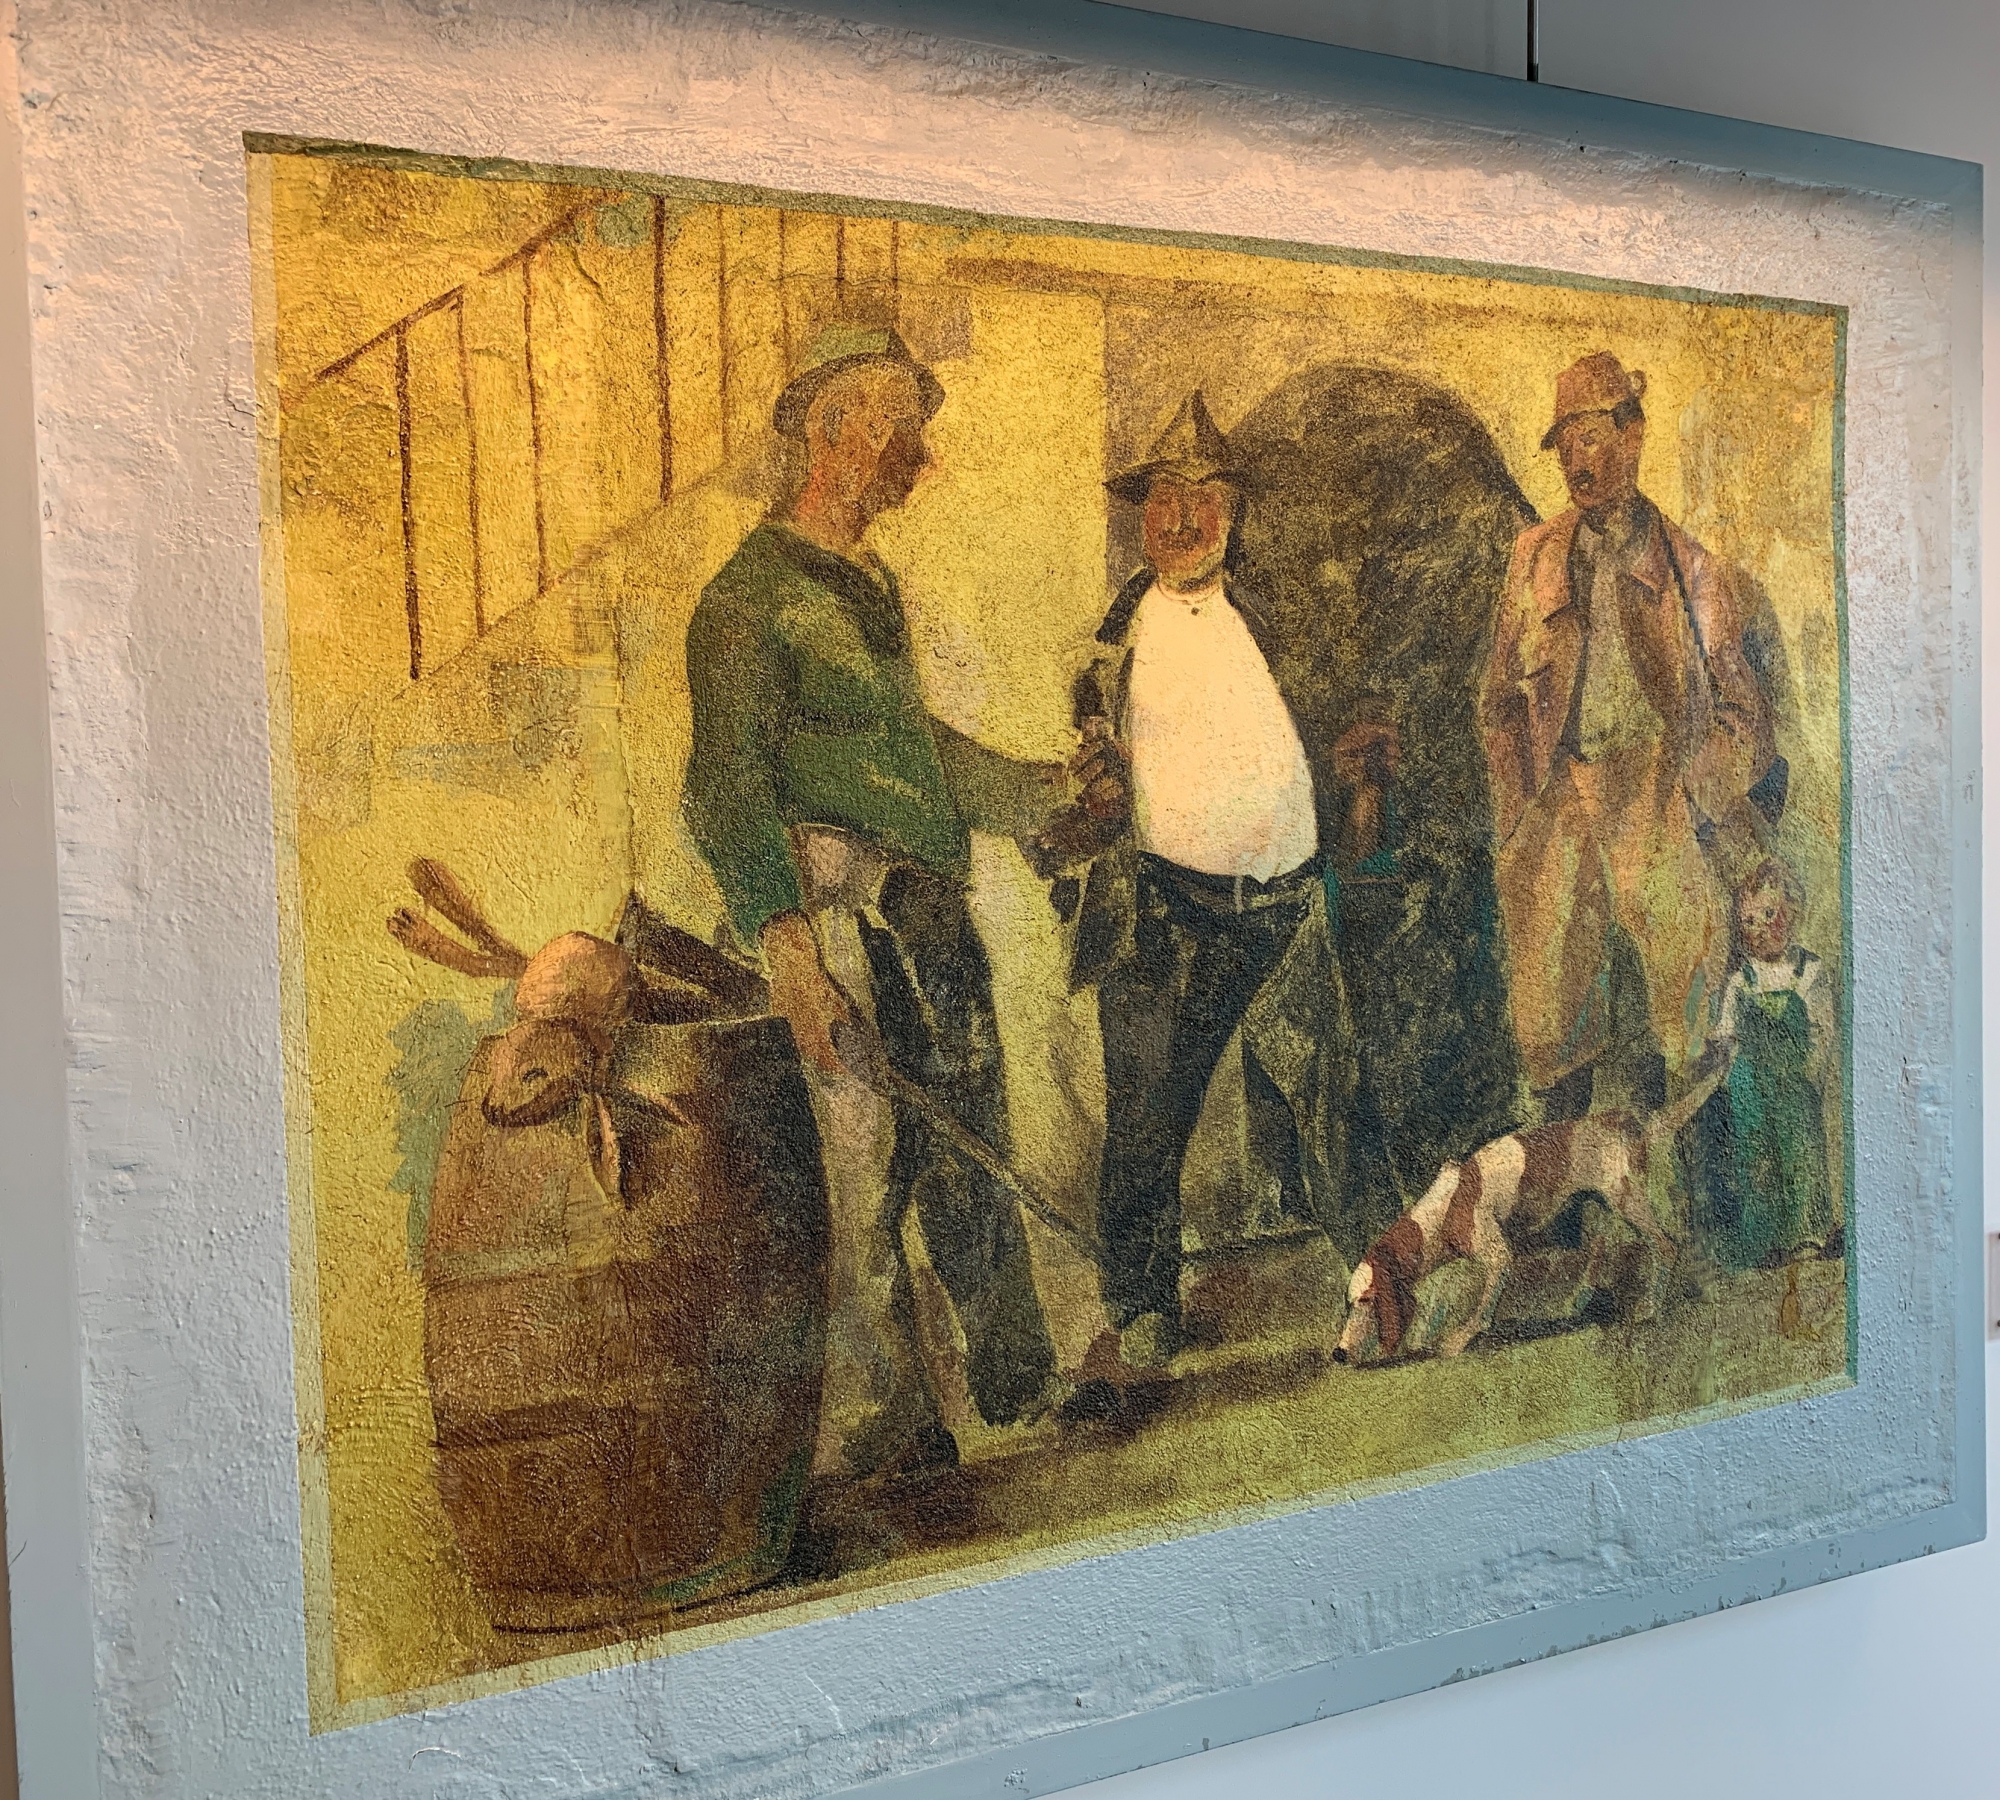 La fresque d'Albert Chavaz «Le retour de la chasse» a été restaurée. Elle est désormais exposée dans les locaux de la Loterie romande à Lausanne.